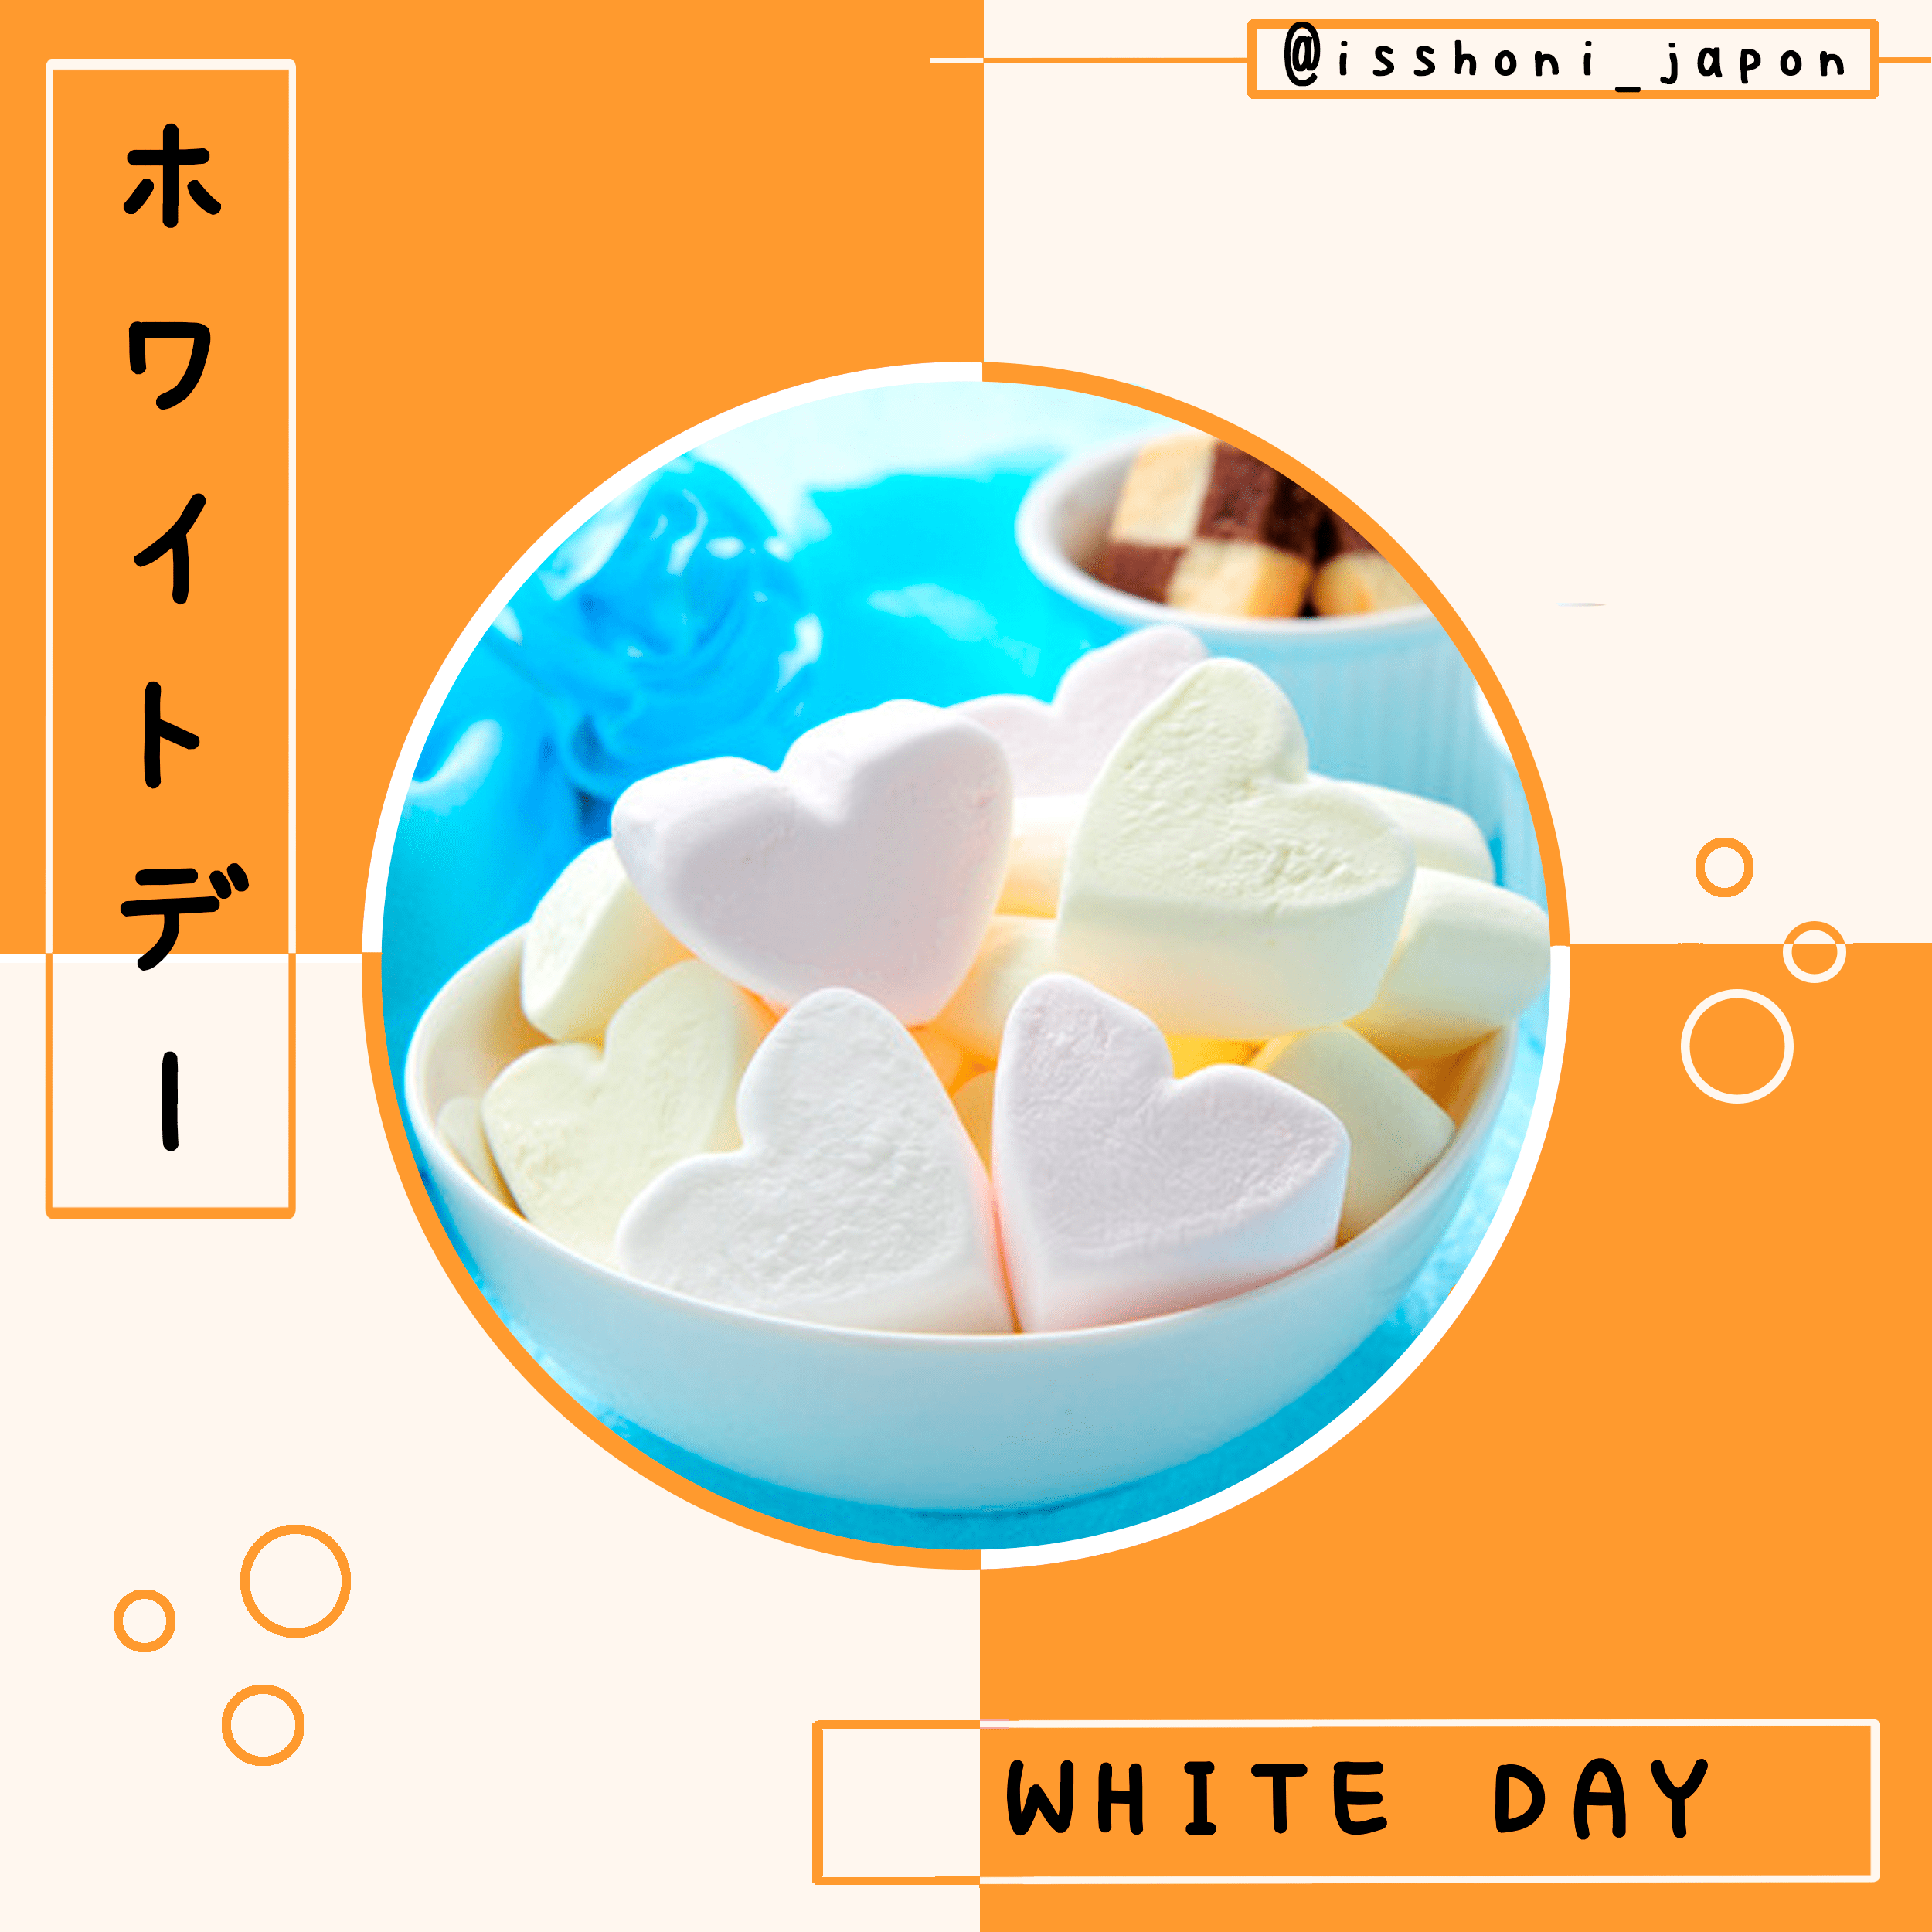 White Day au Japon couverture - Blog - Isshoni